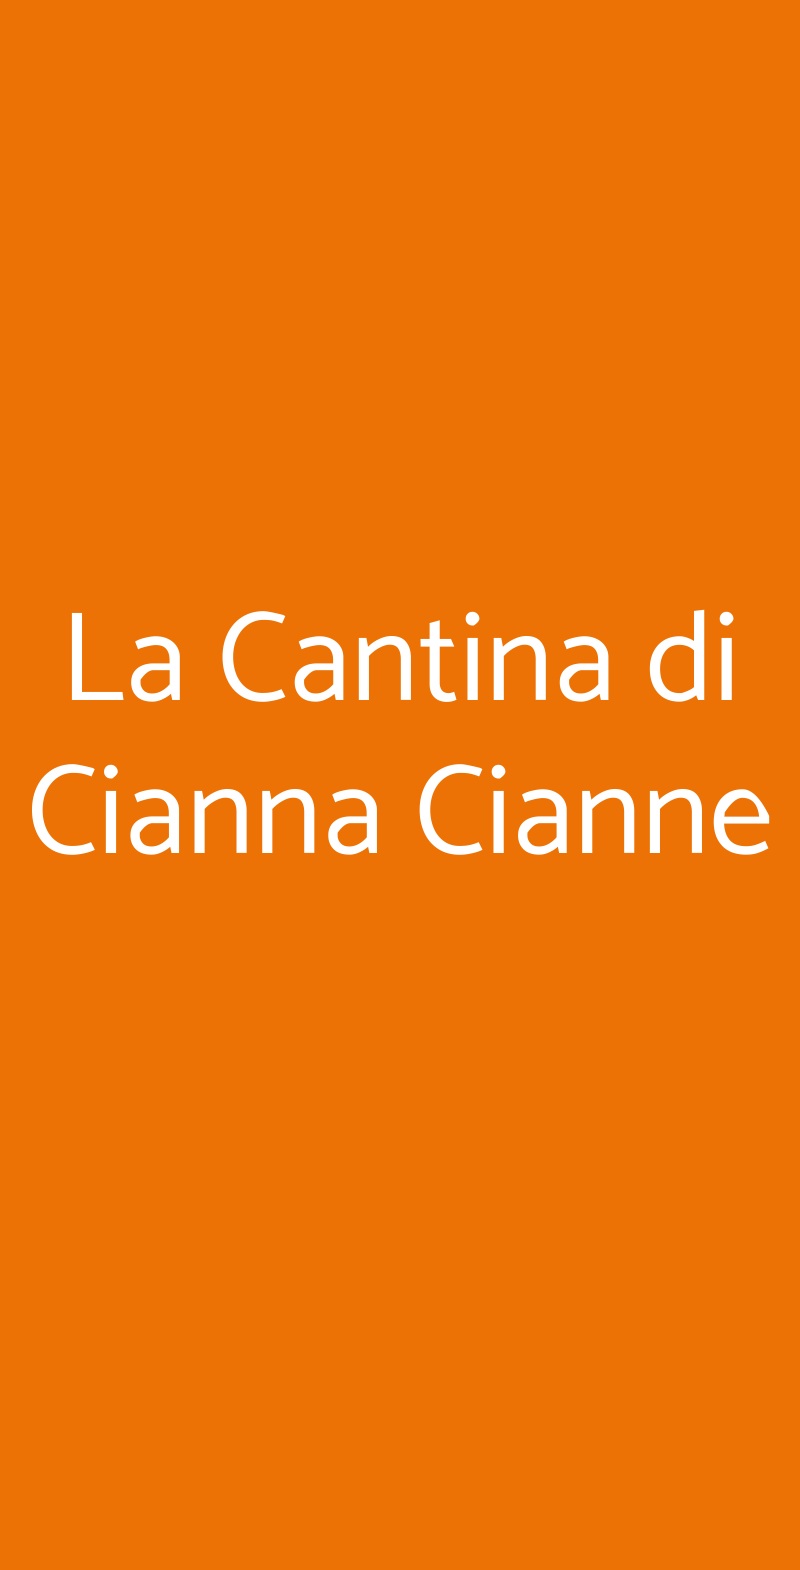 La Cantina di Cianna Cianne Bari menù 1 pagina